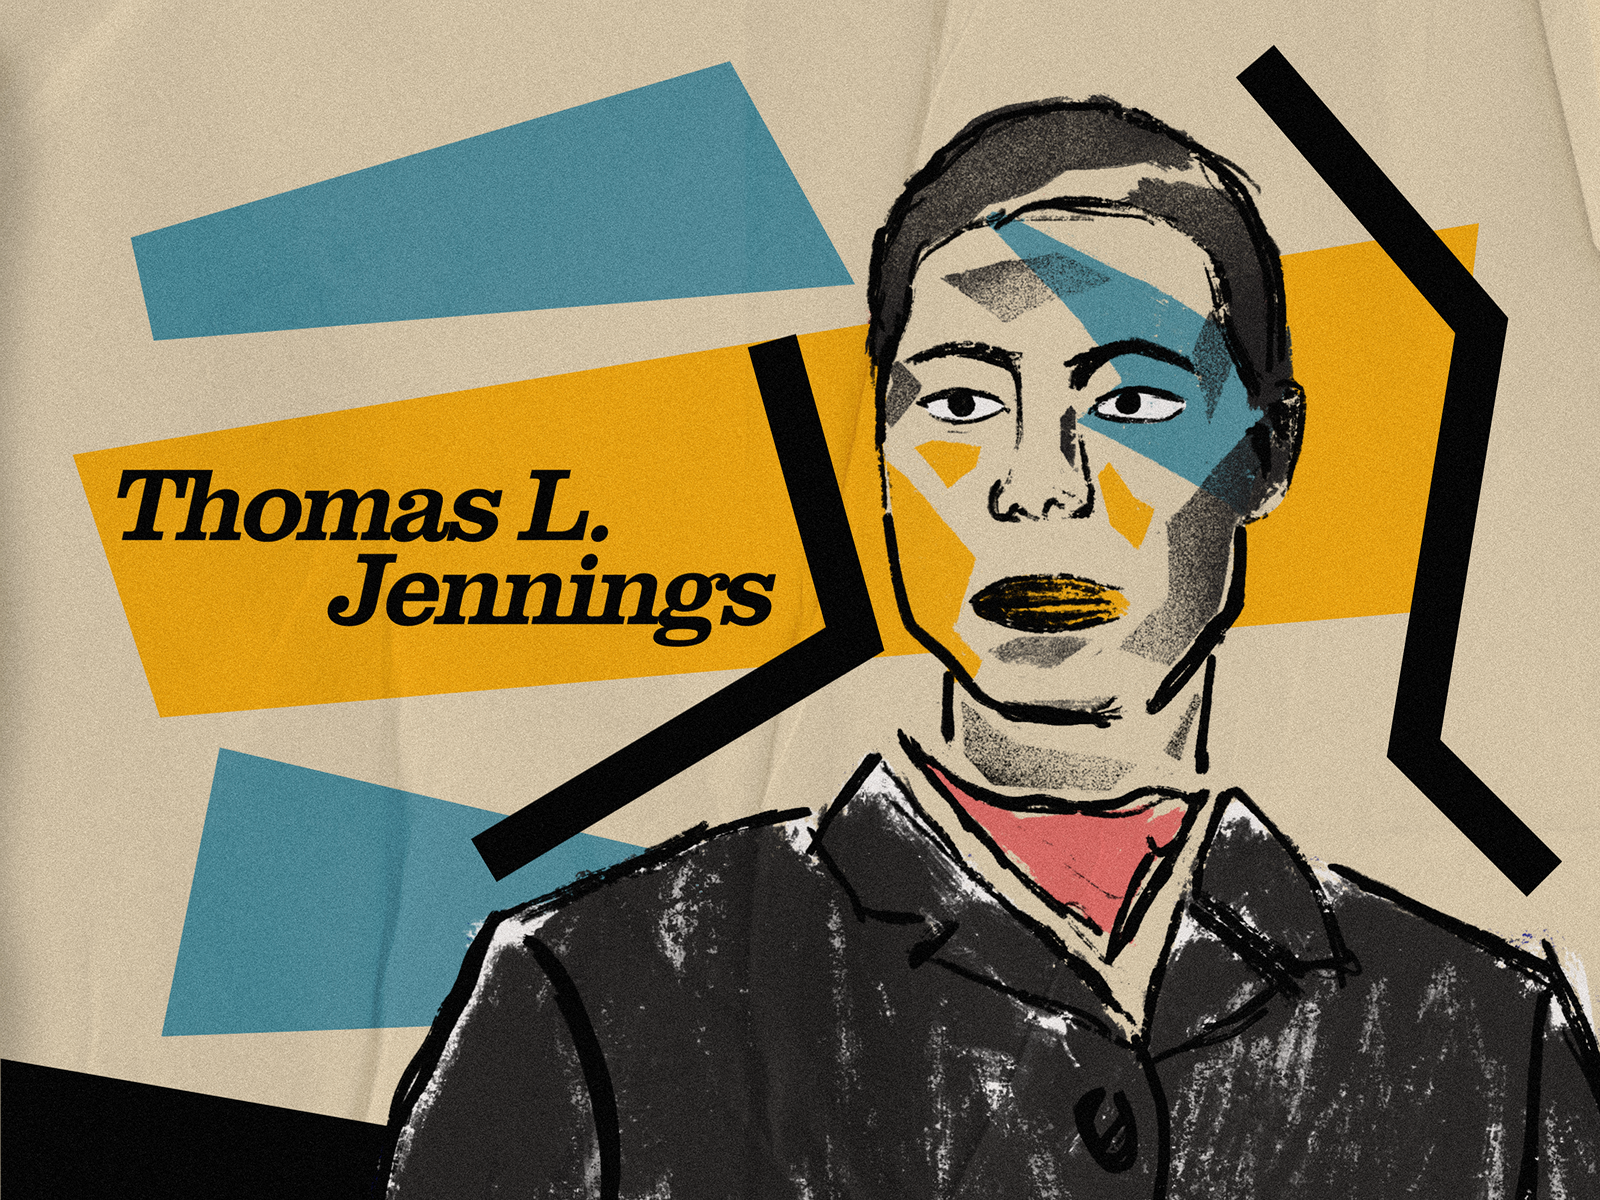 Thomas L. Jennings